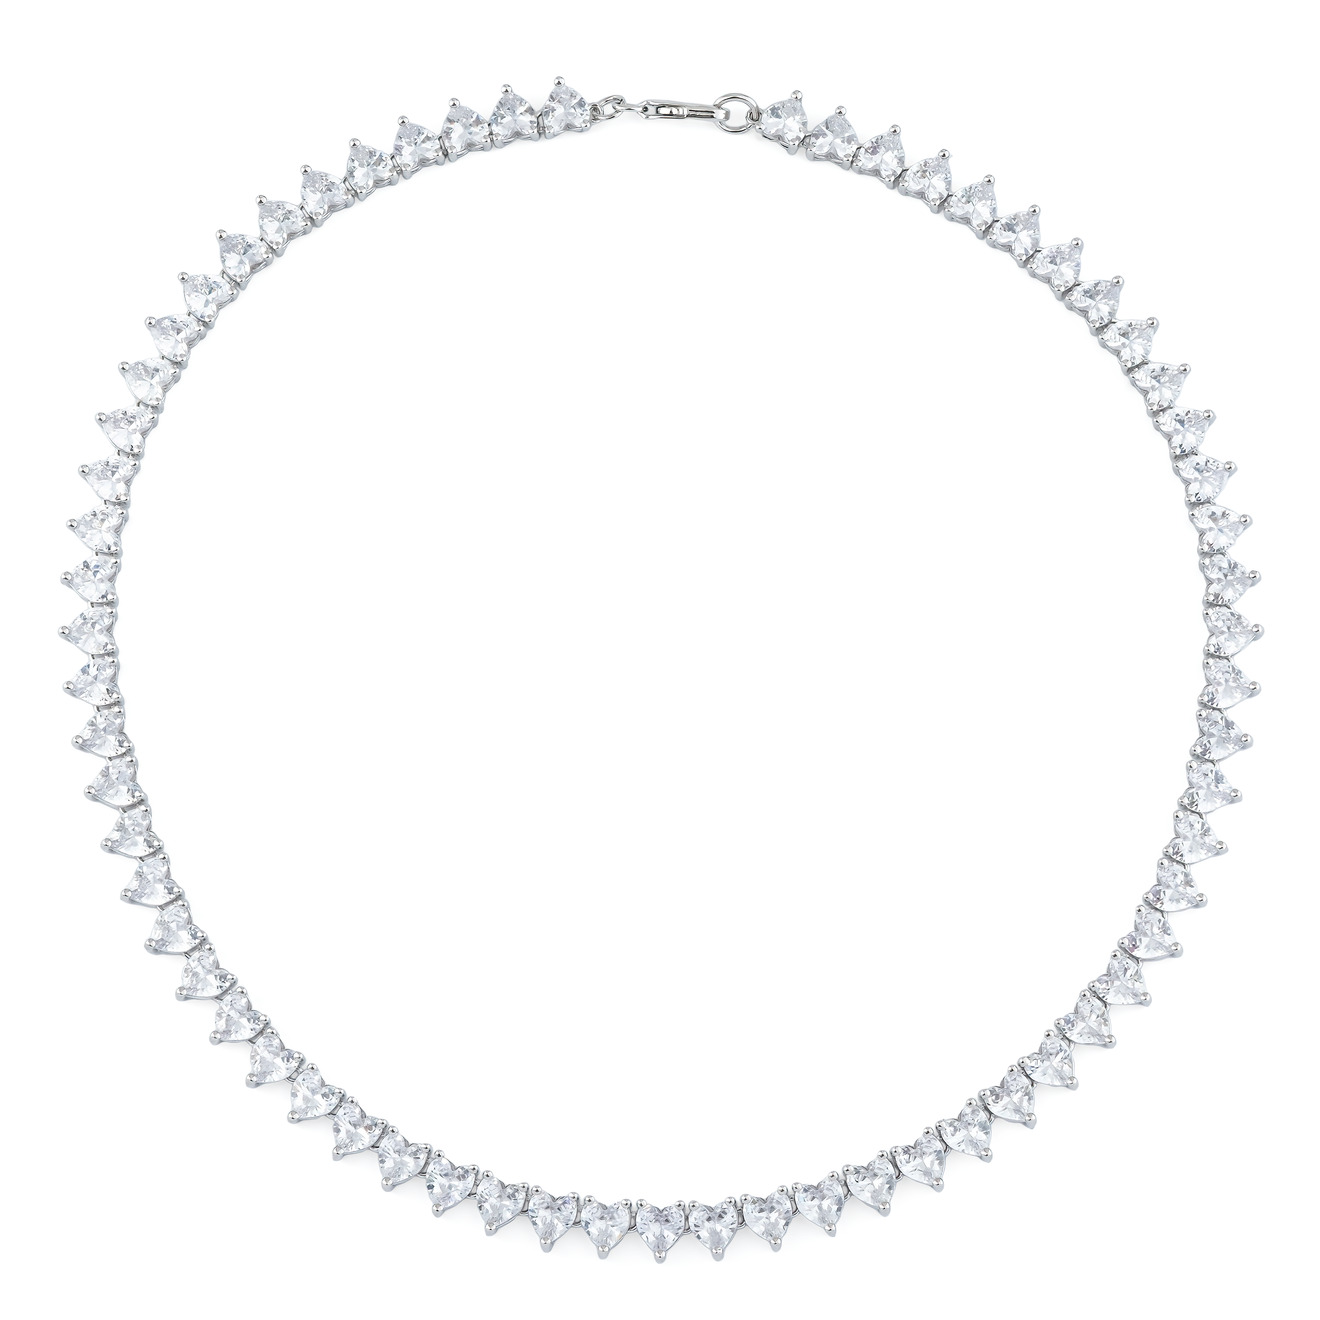 Herald Percy Серебристое колье с кристаллами herald percy серебристое незамкнутое кольцо с кристаллами